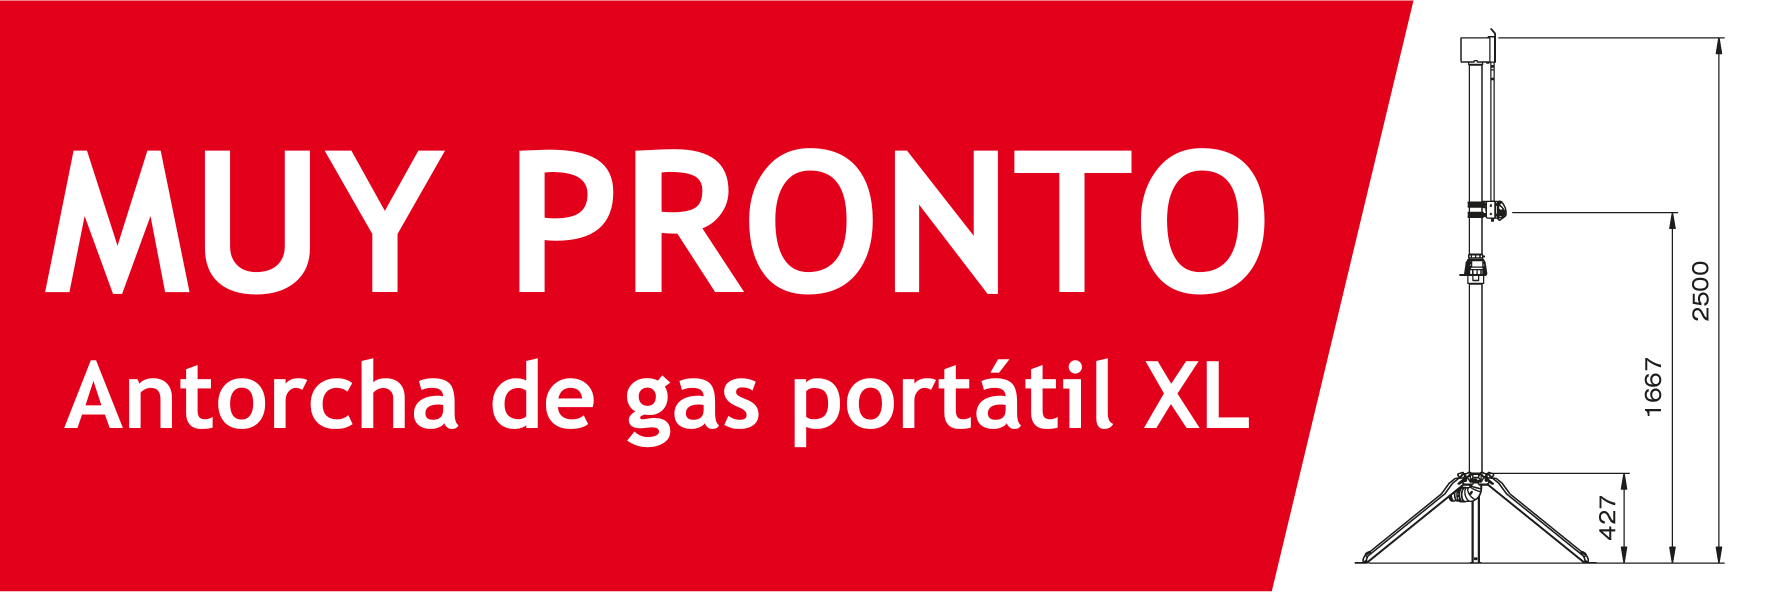 anuncio antorcha de gas portátil XL